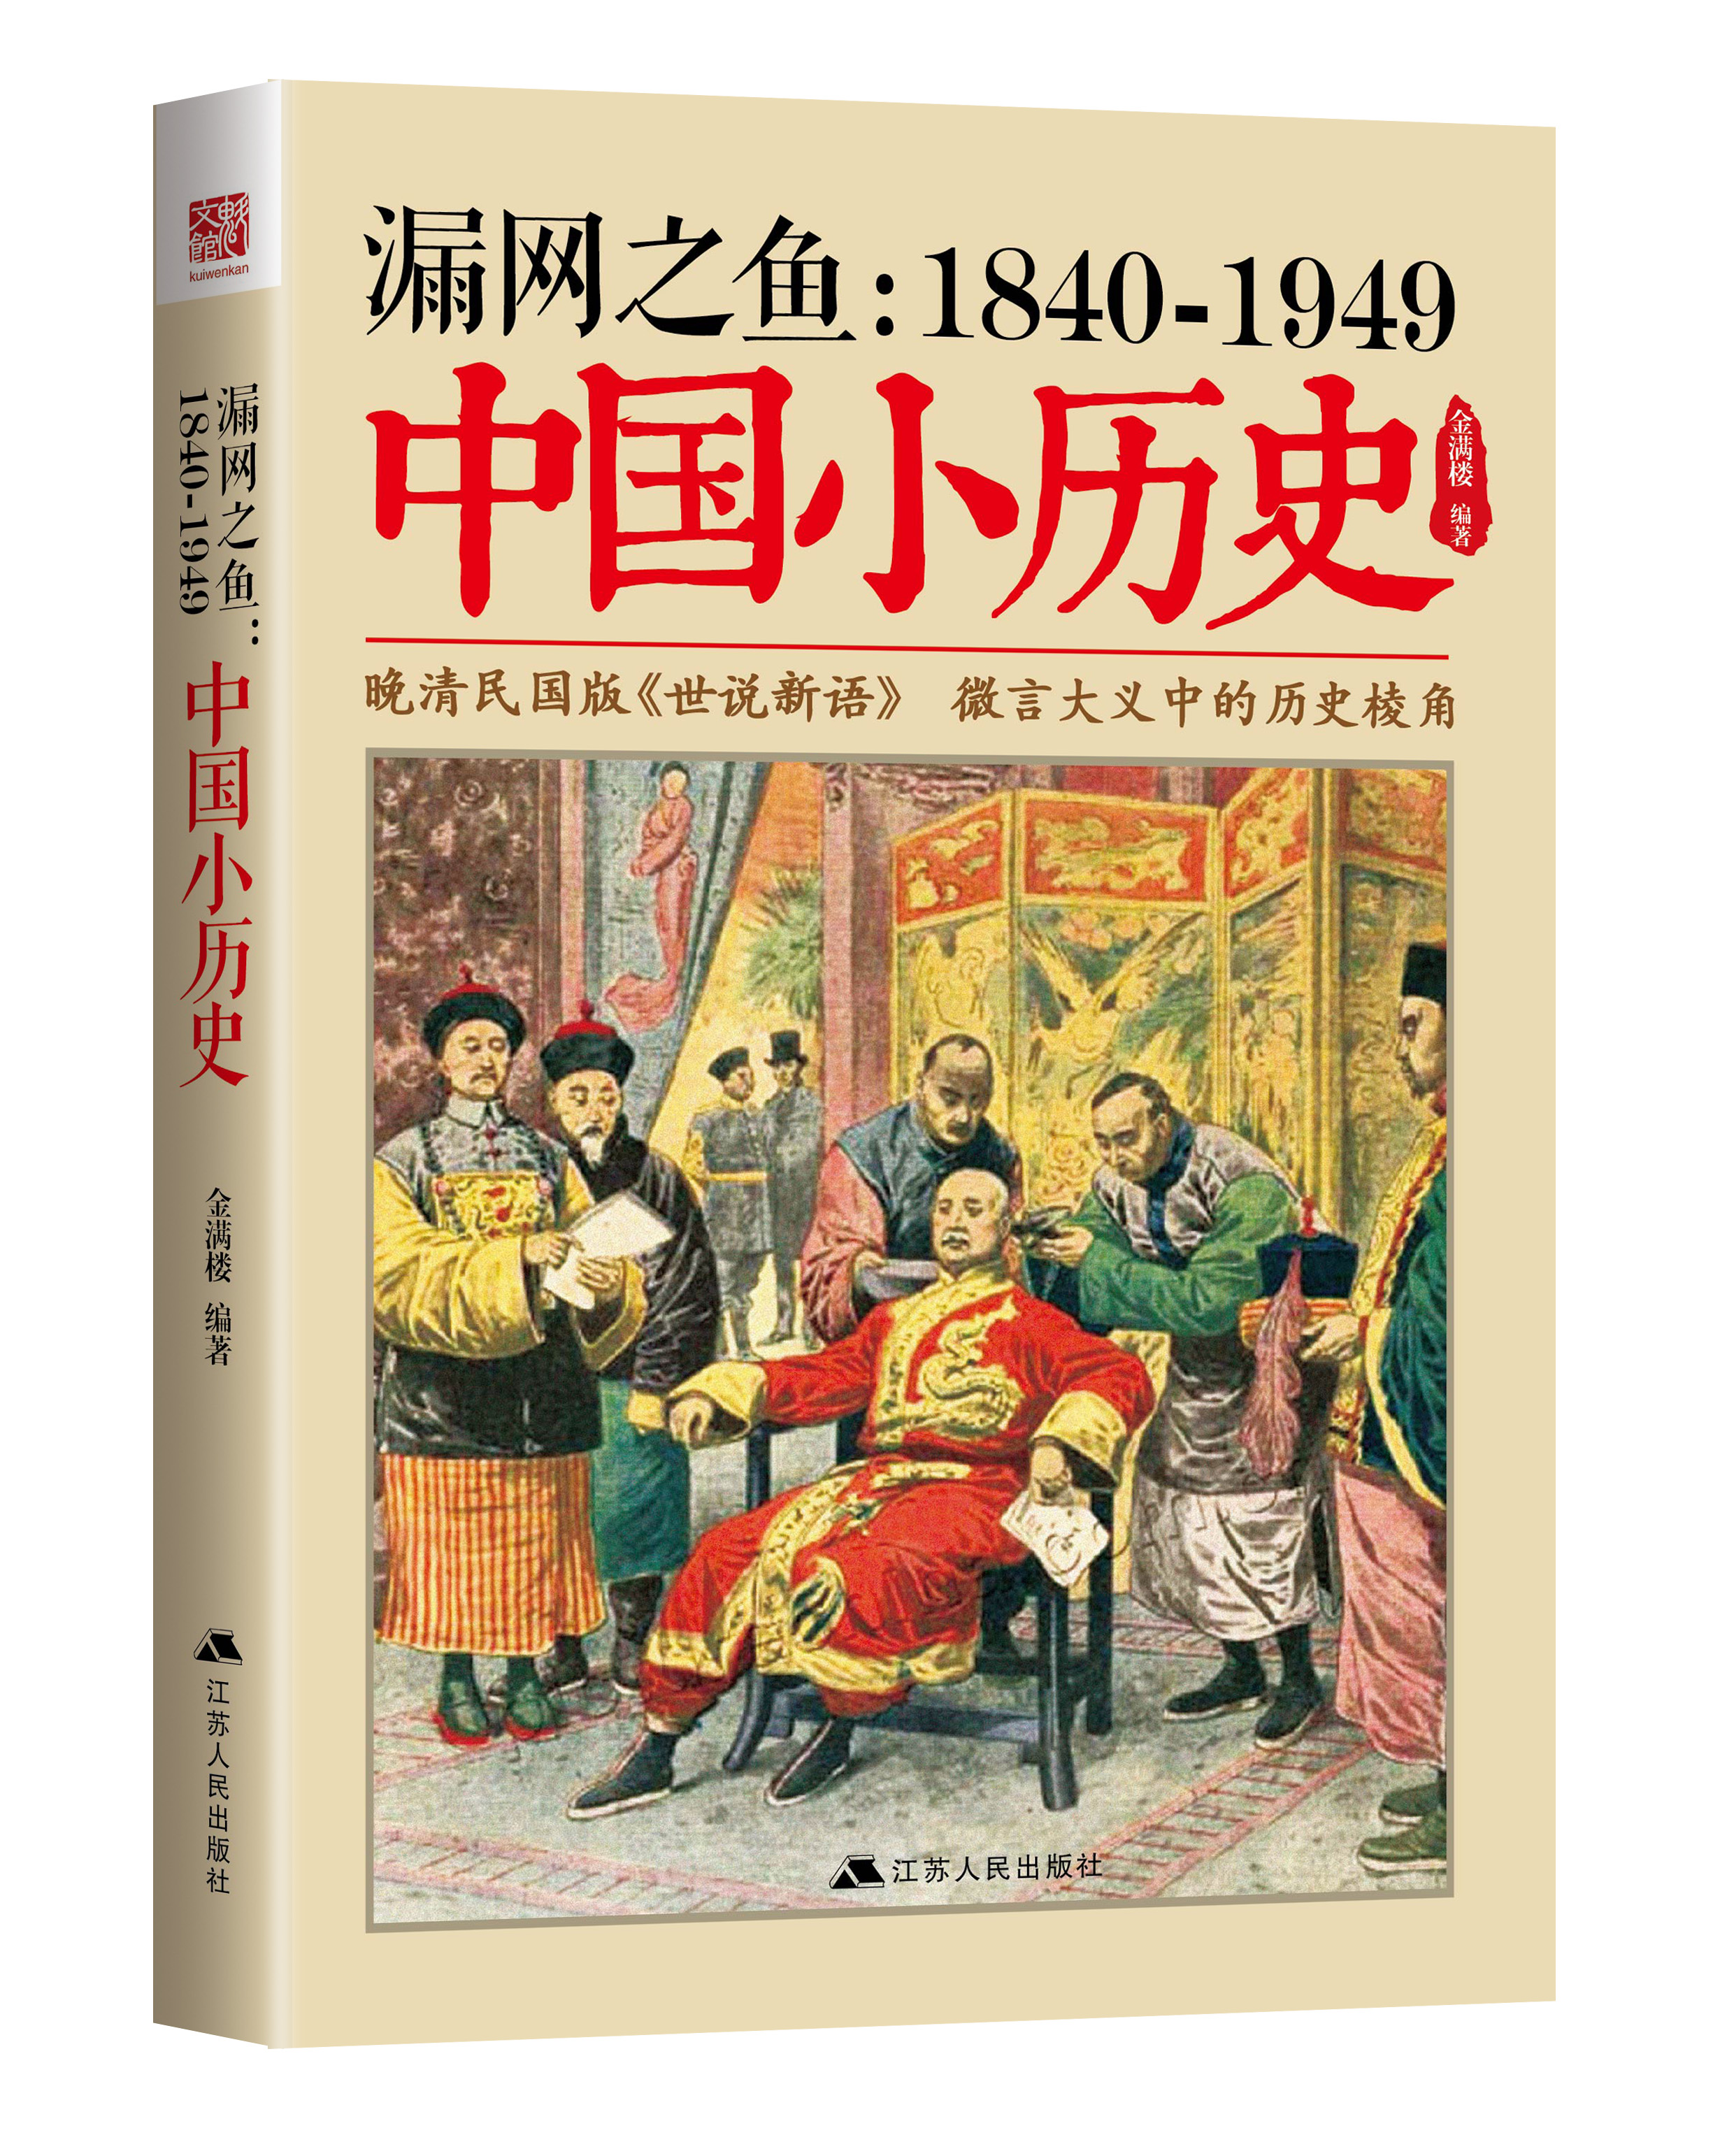 漏網之魚 : 1840-1949中國小歷史